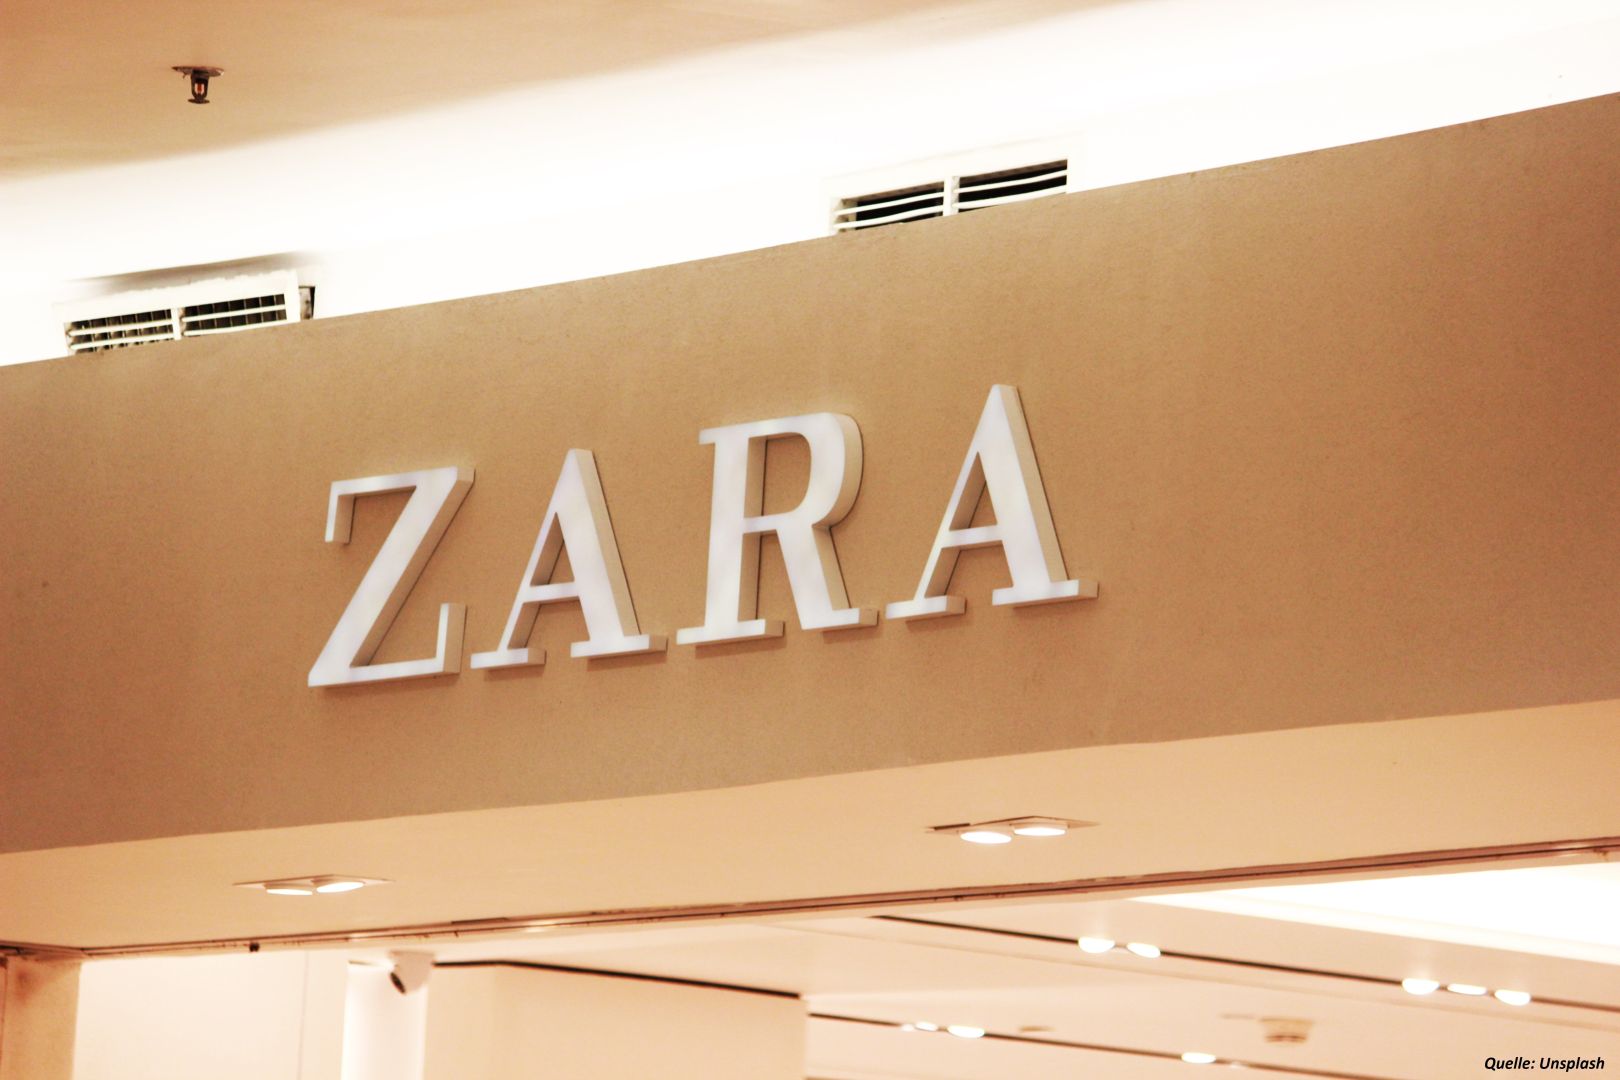 Gewinn des Zara-Markeneigentümers erreicht Rekordhöhe